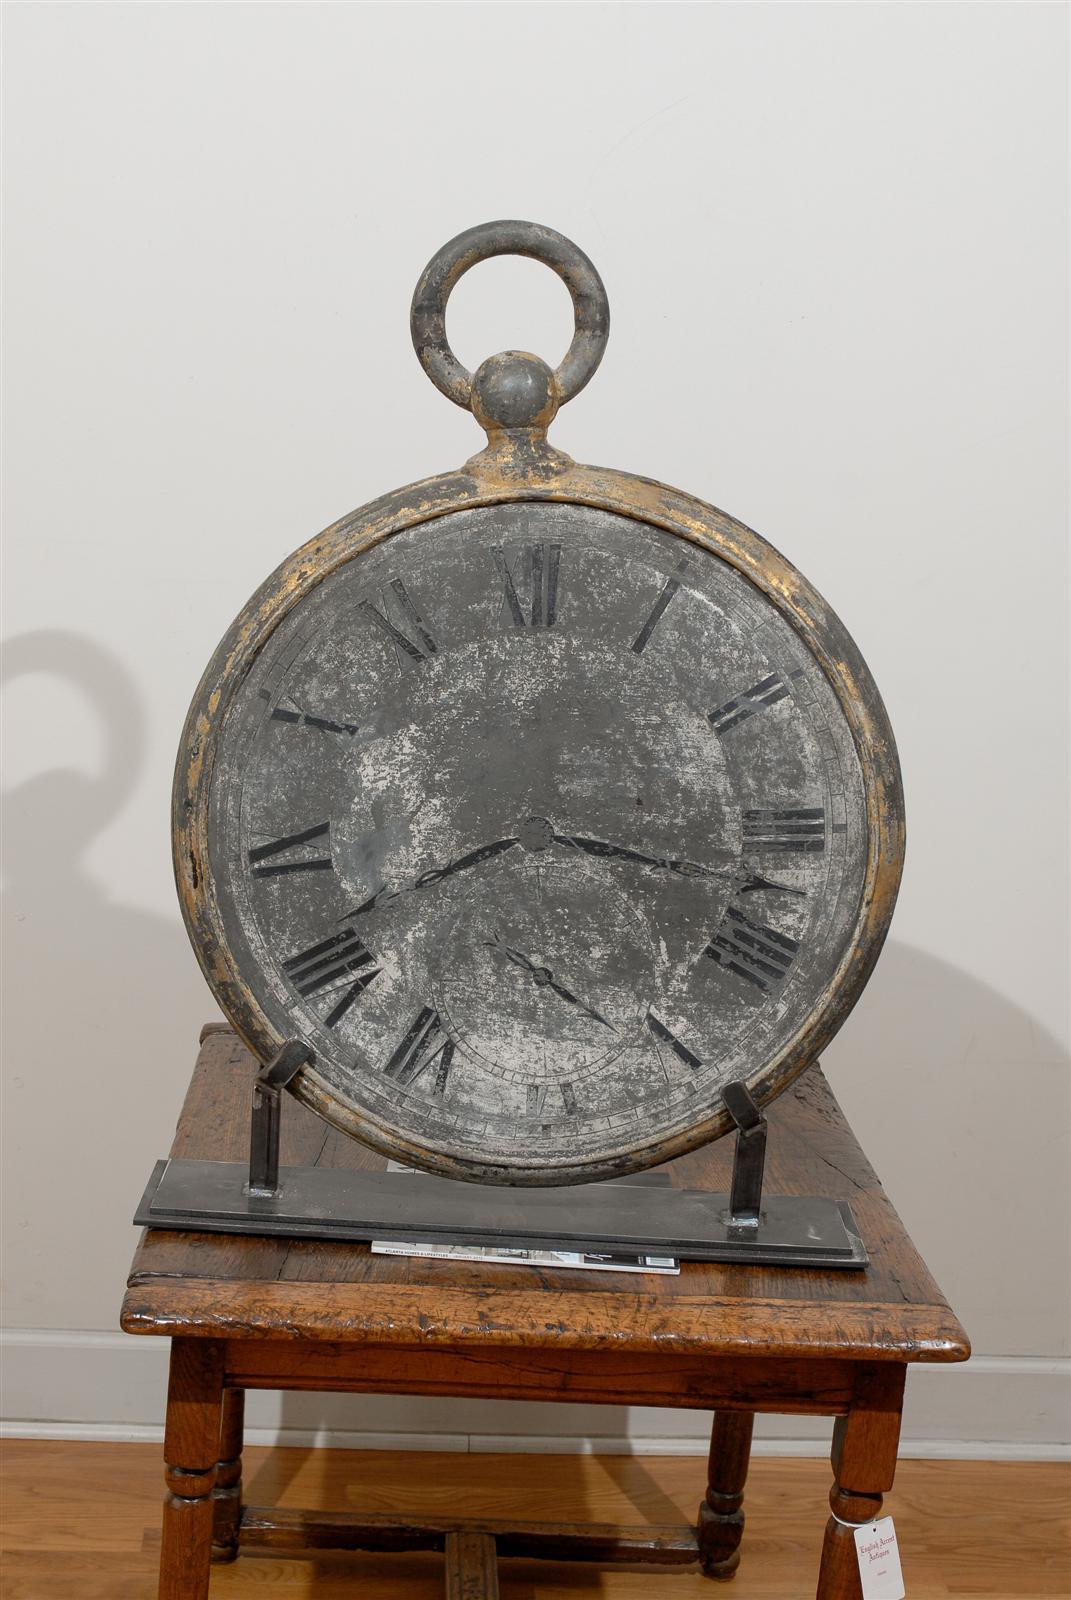 Dieses französische Großuhrenschild aus der Mitte des 19. Jahrhunderts zeigt eine überdimensionale Taschenuhr mit einer runden Schleife an der Spitze. Das graue Zifferblatt aus Zink ist mit römischen Ziffern verziert, wobei die Zeiger 8:17 anzeigen,